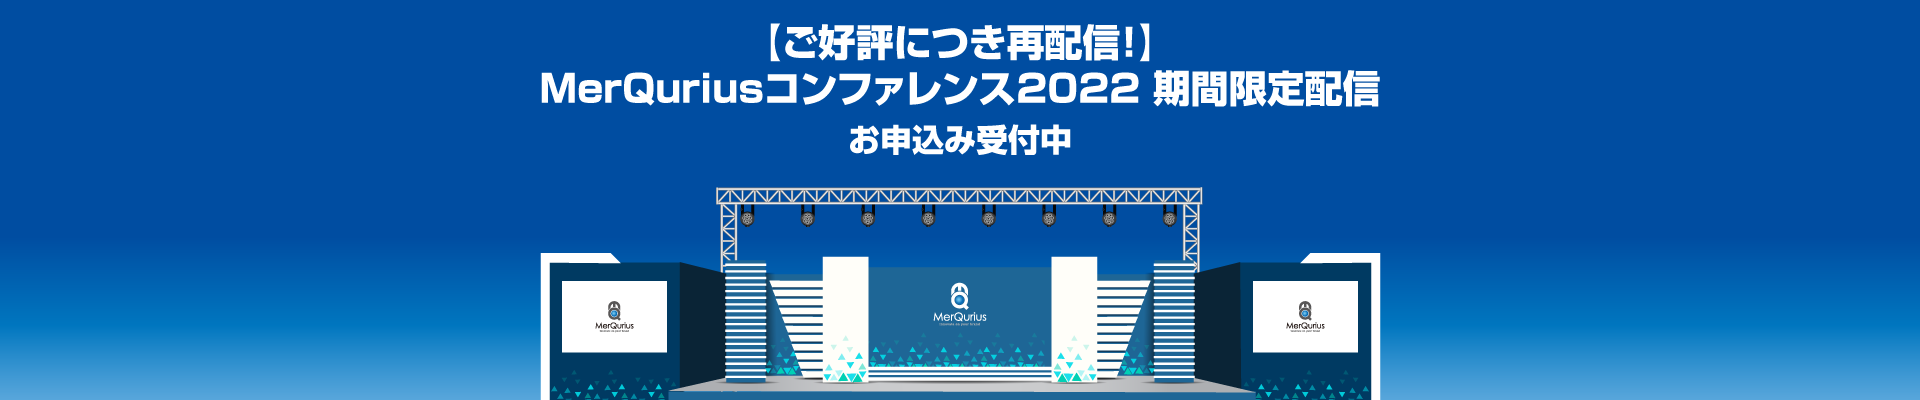 第20回 MerQuriusコンファレンス 2022開催レポート